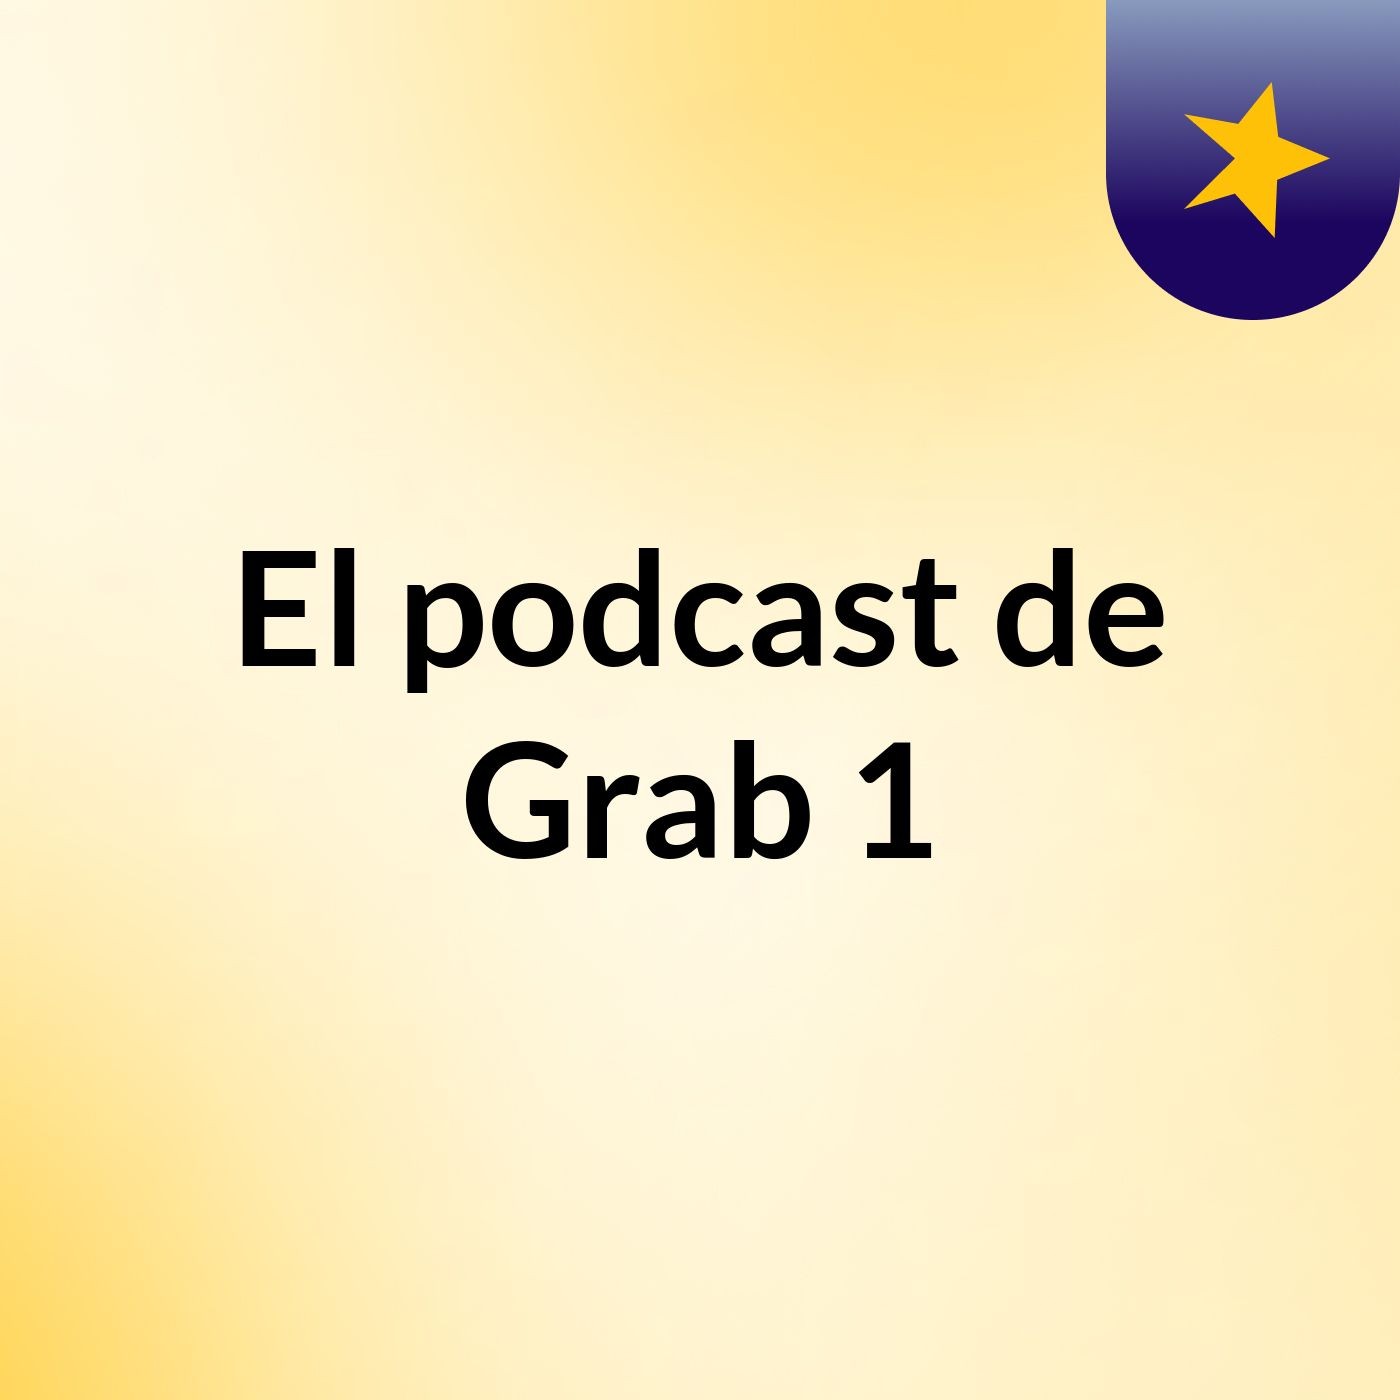 Episodio 5 - El podcast de Grab 1